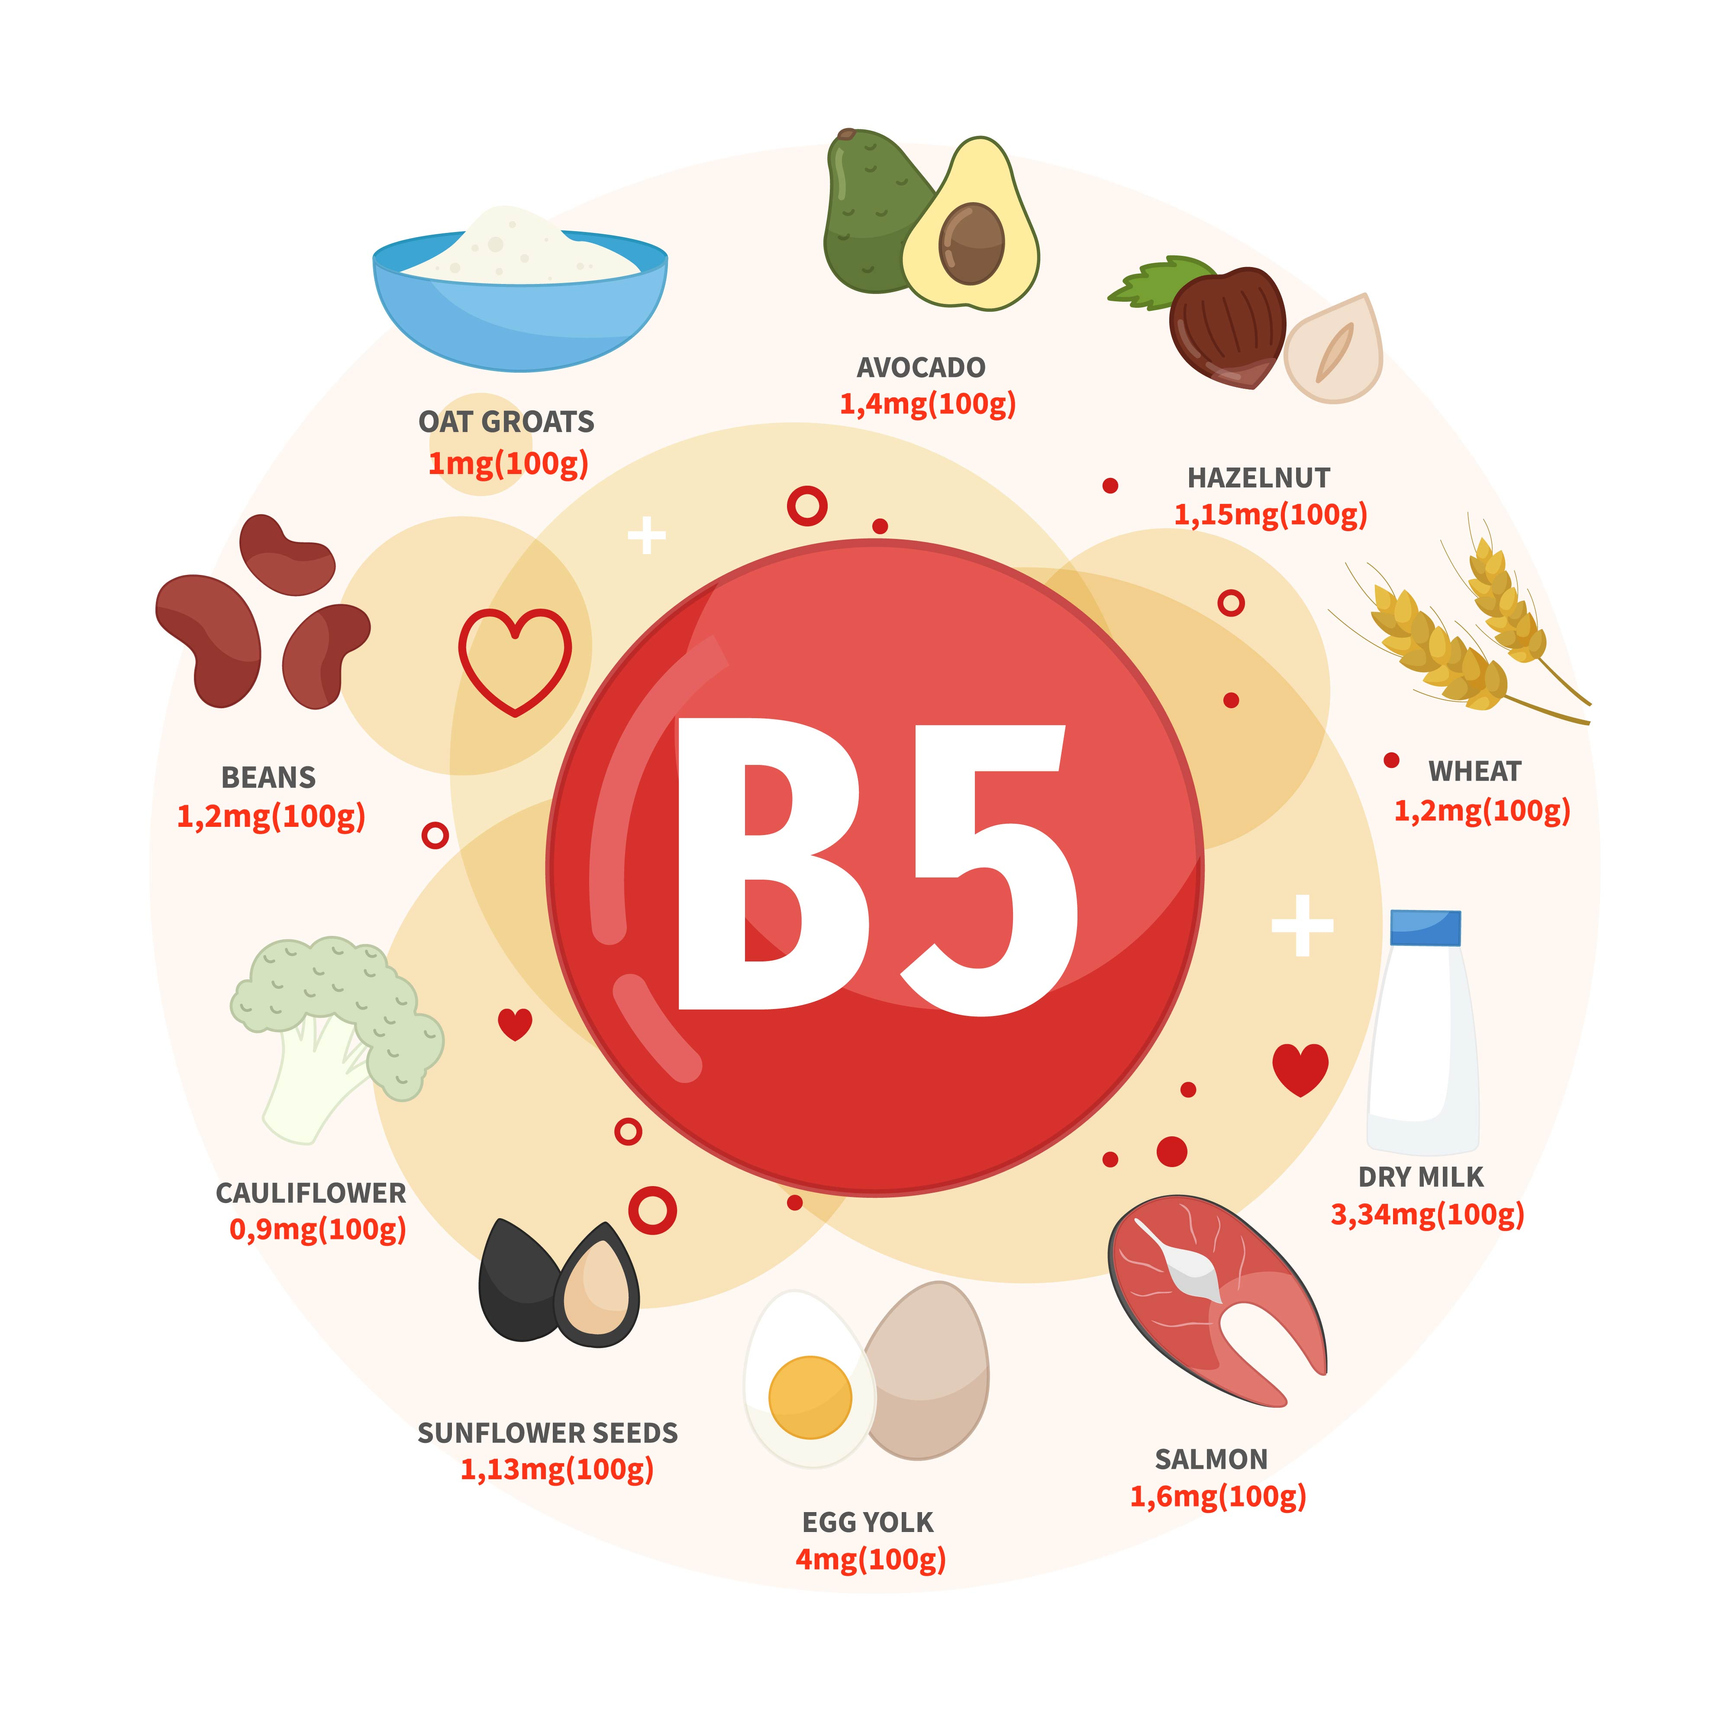 Zu den besten Vitamin-B5-Quellen gehören Avocados, Haselnüsse, Weizen, Milch, Lachs, Eier, Sonnenblumenkerne, Blumenkohl, Bohnen und Haferflocken. 